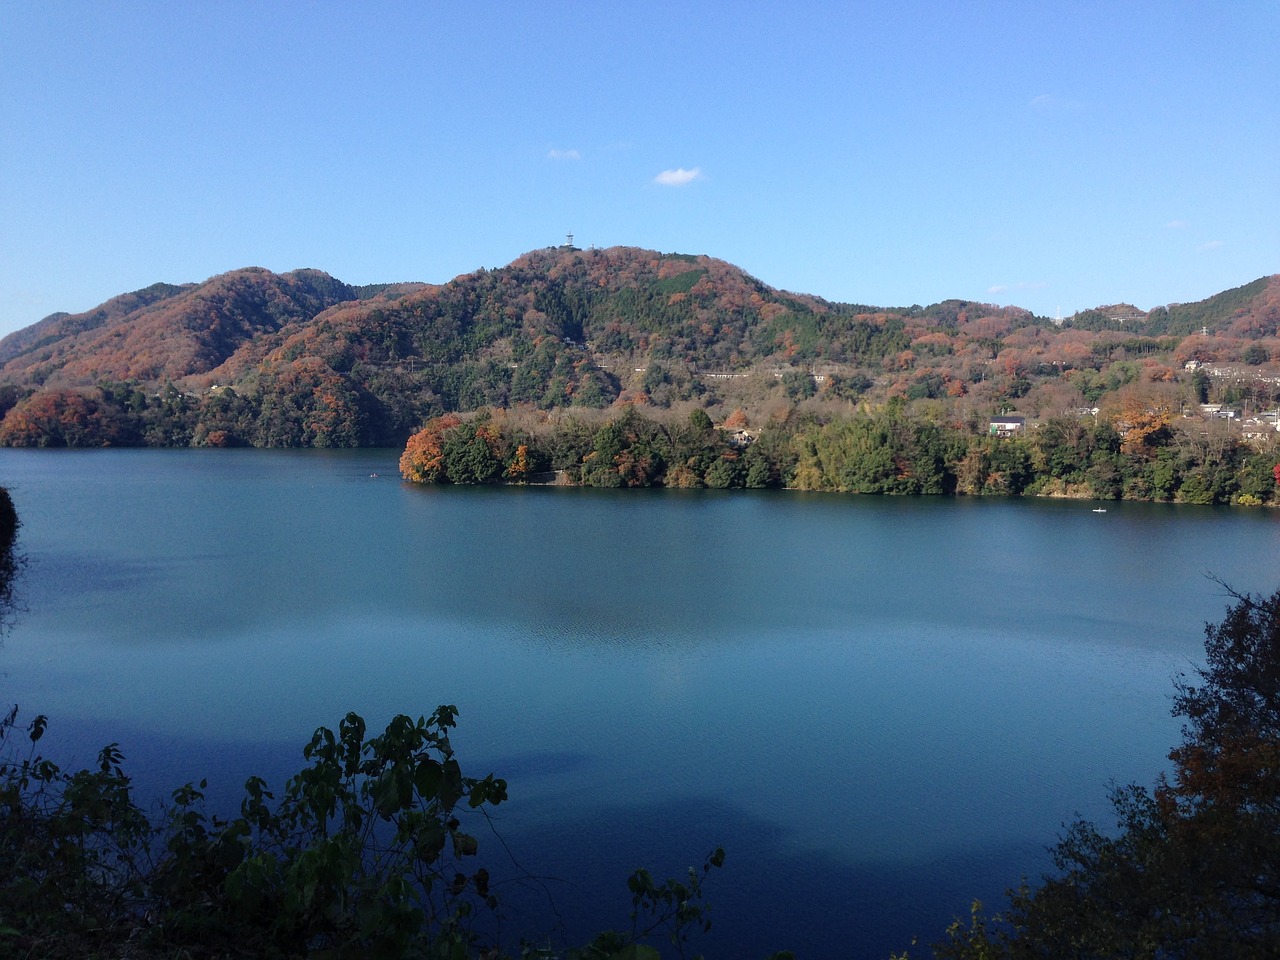 津久井湖1